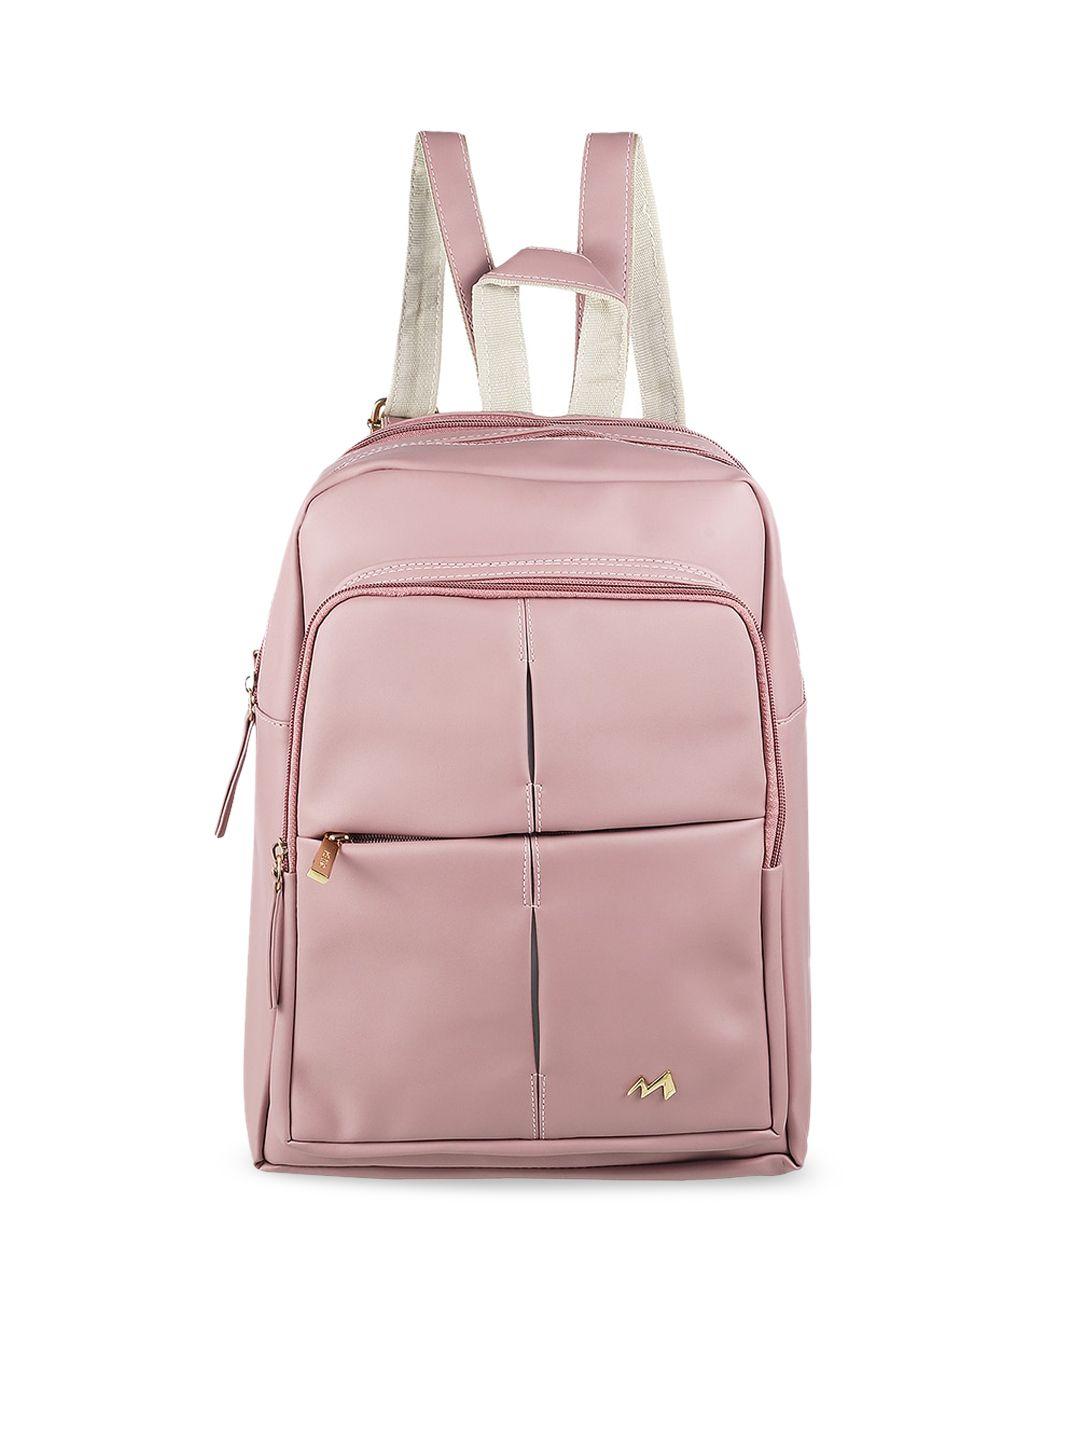 metro pink pu shopper handheld bag